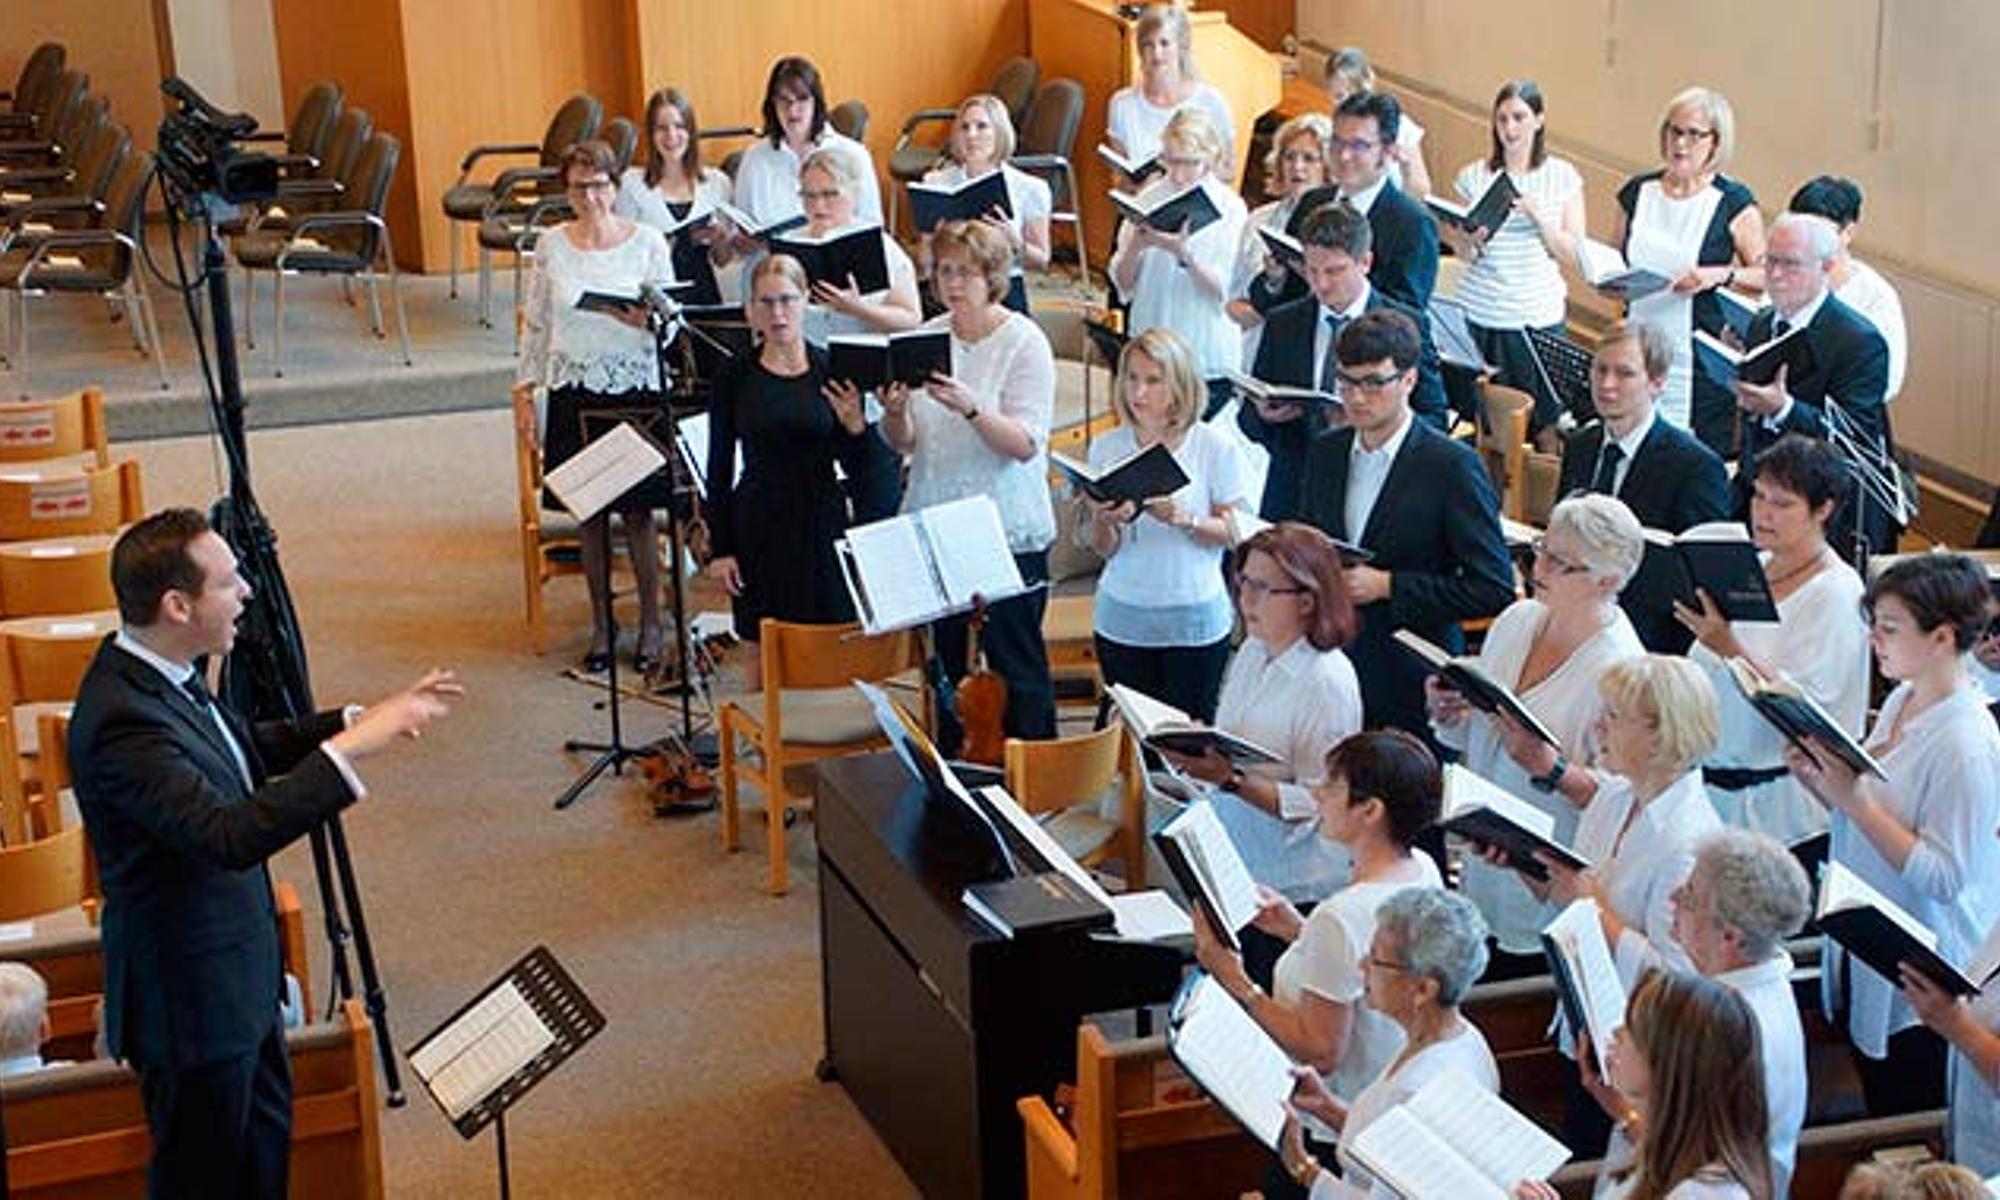 Orchester, Chor und Kinderchor gestalteten den Gottesdienst musikalisch mit